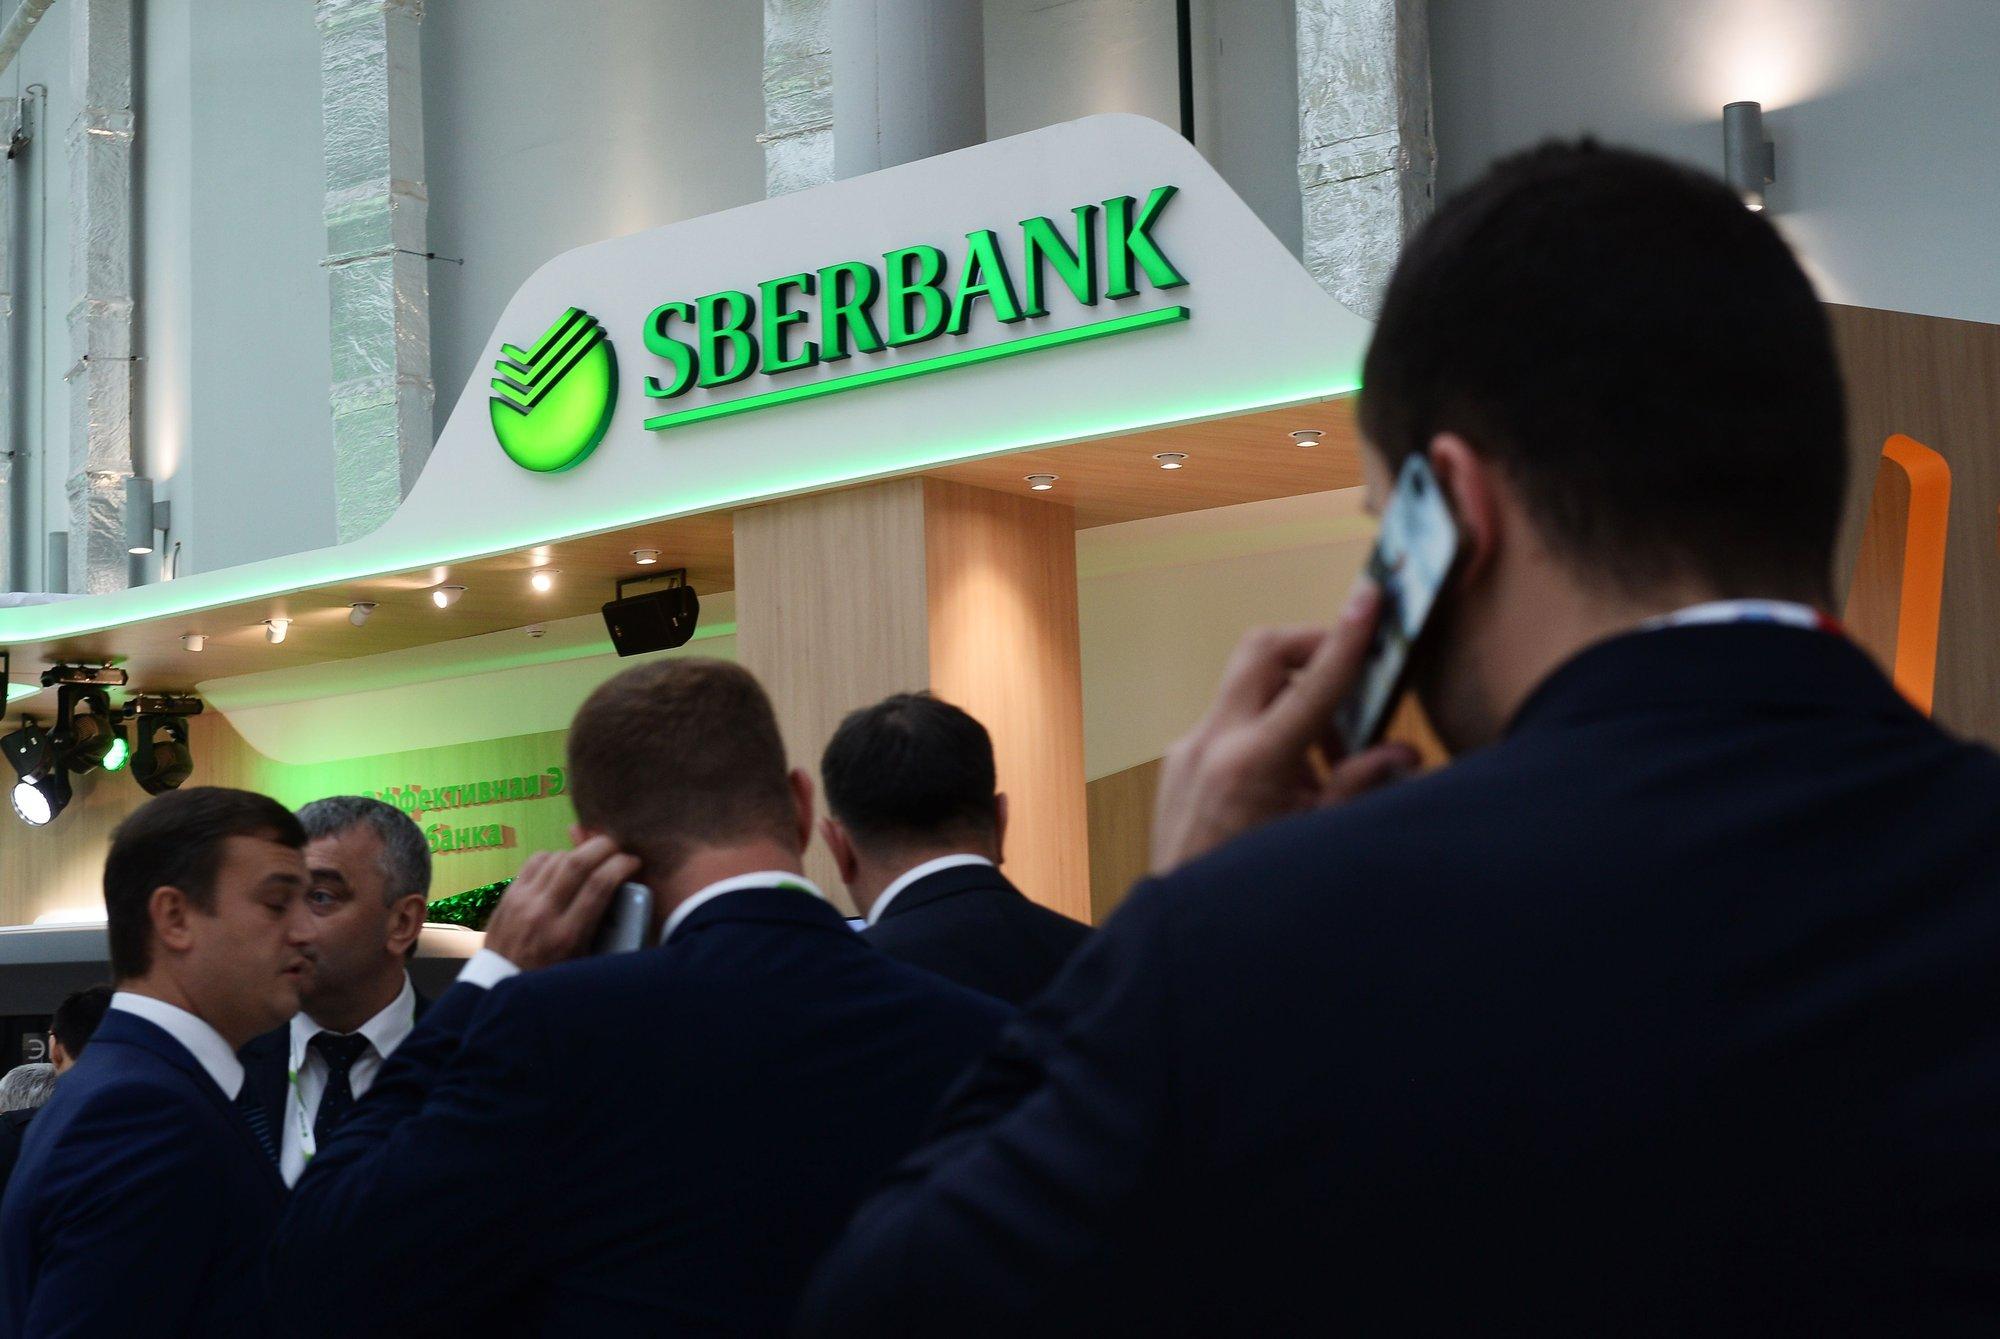 Američke institucije moraju zatvoriti svoje račune u Sberbanki u roku od 30 dana - Avaz